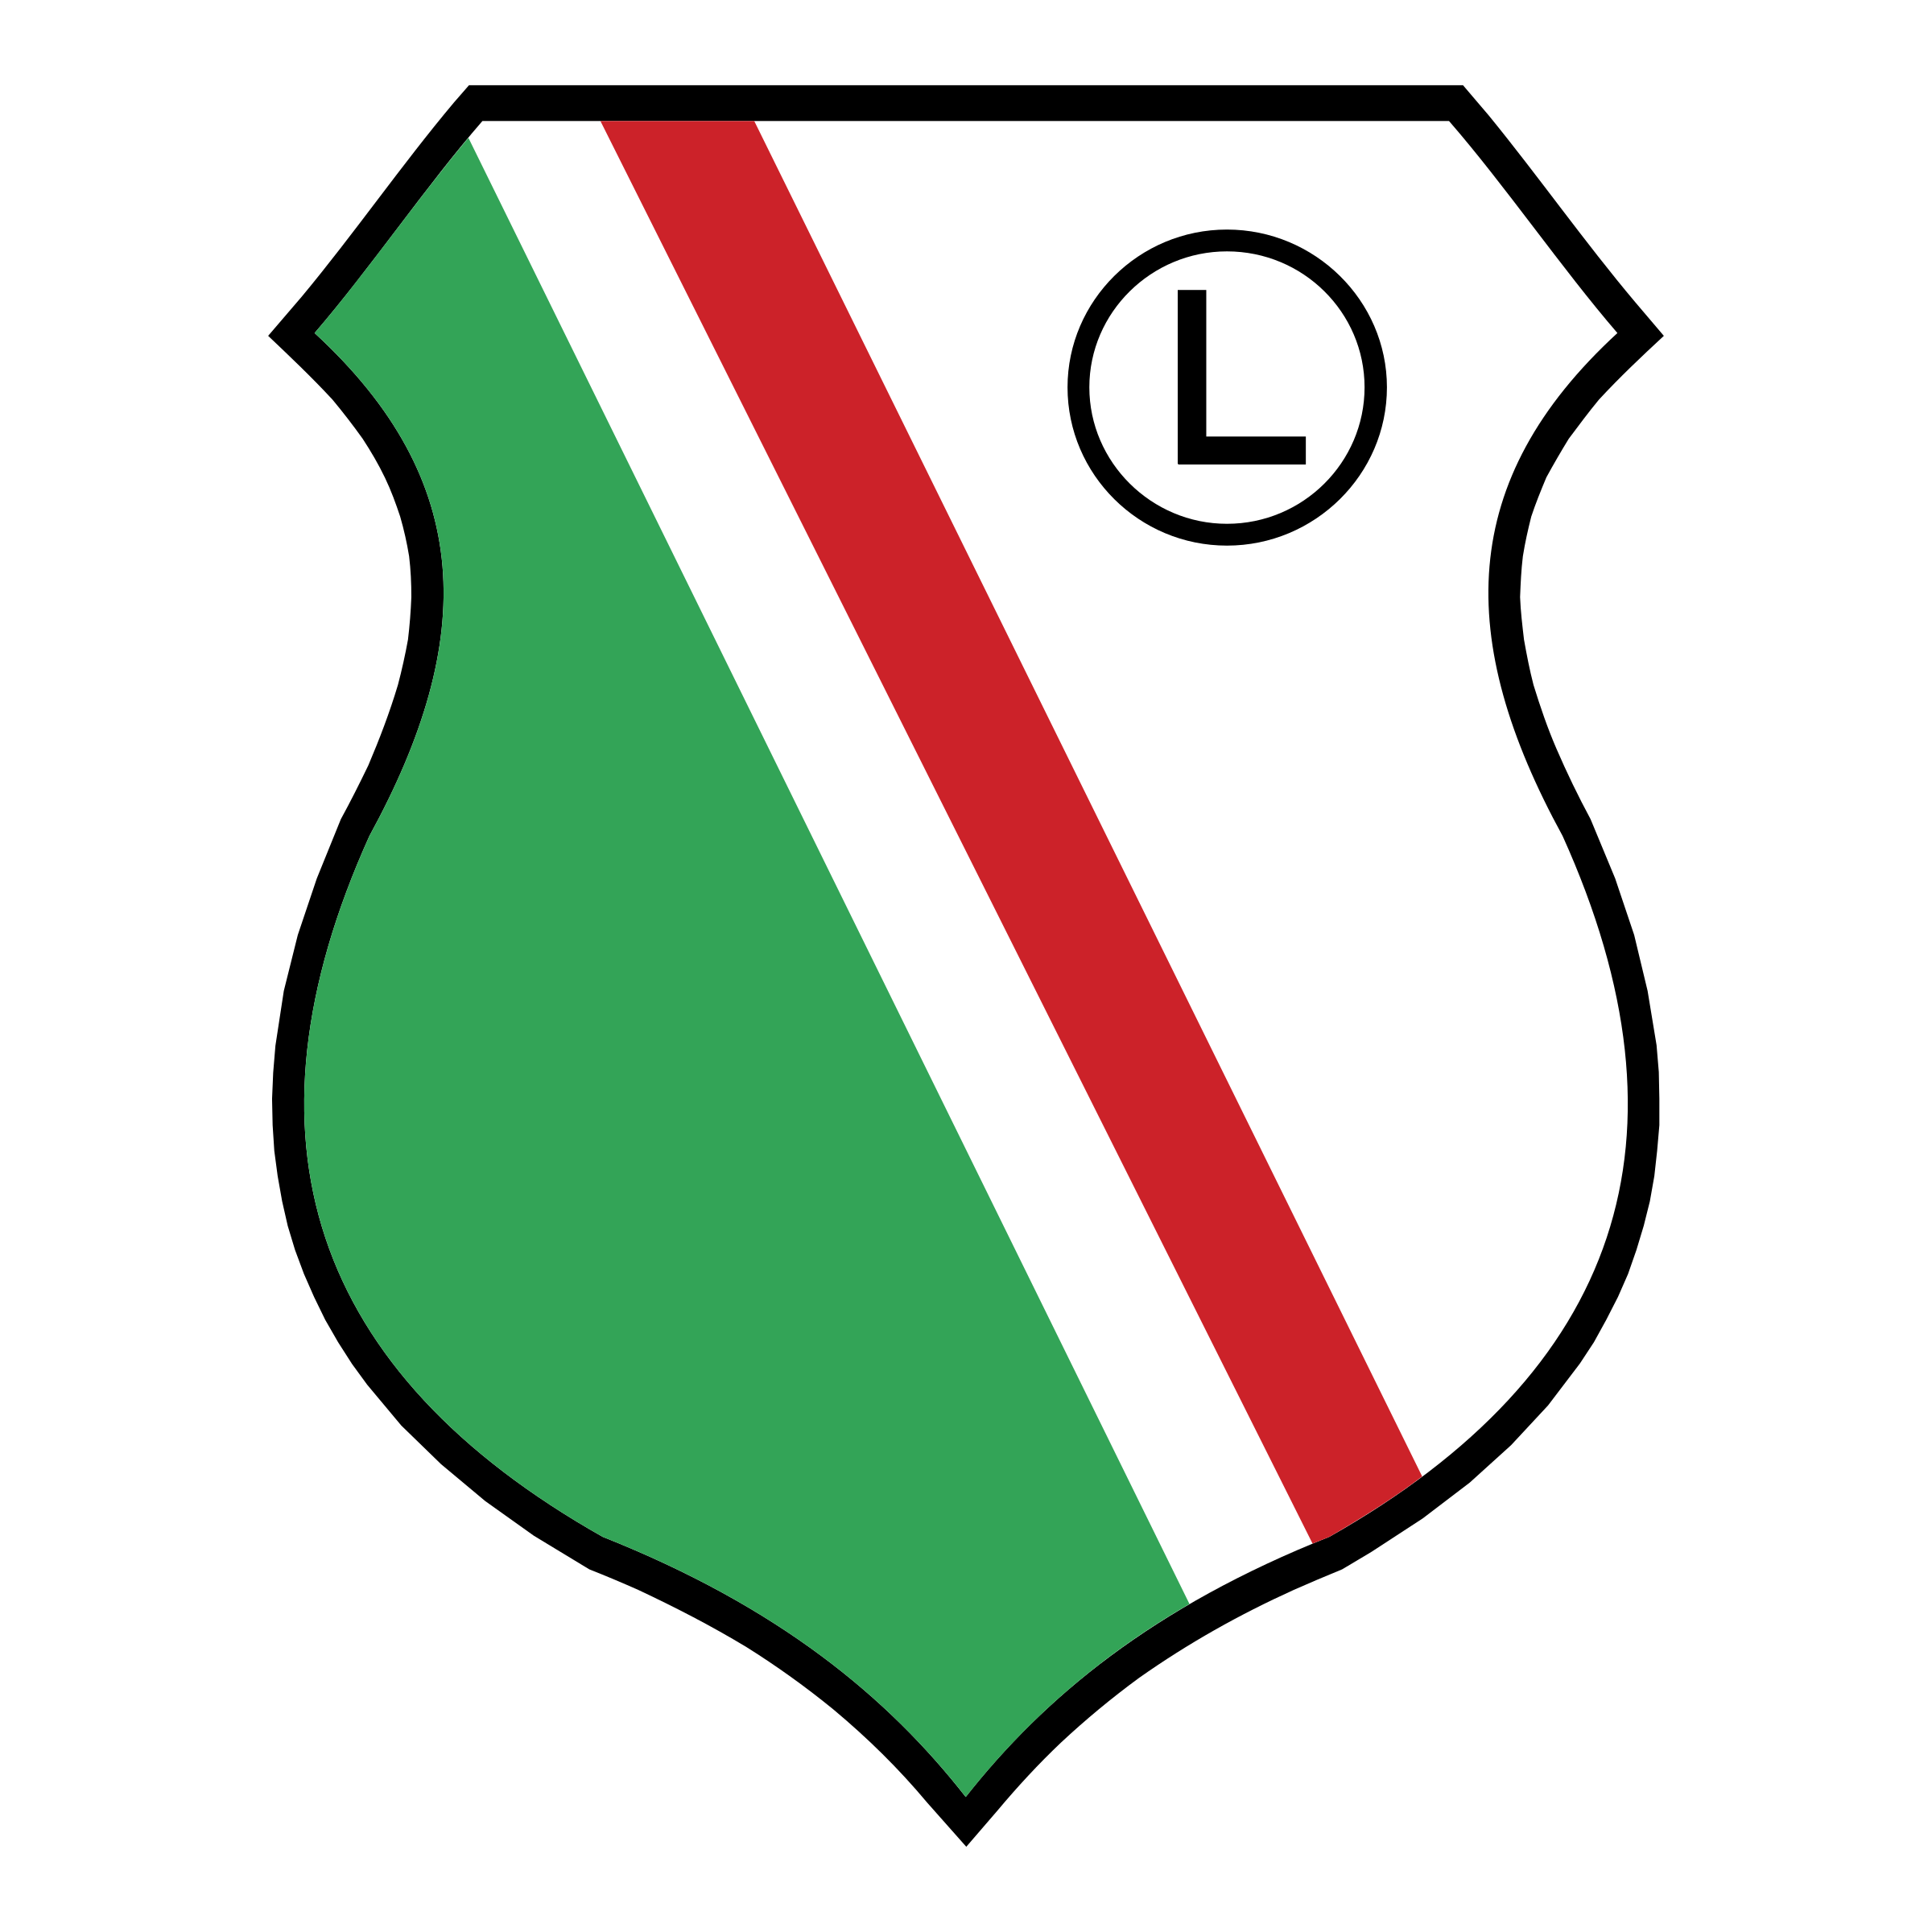 Logo Legia Warszawa